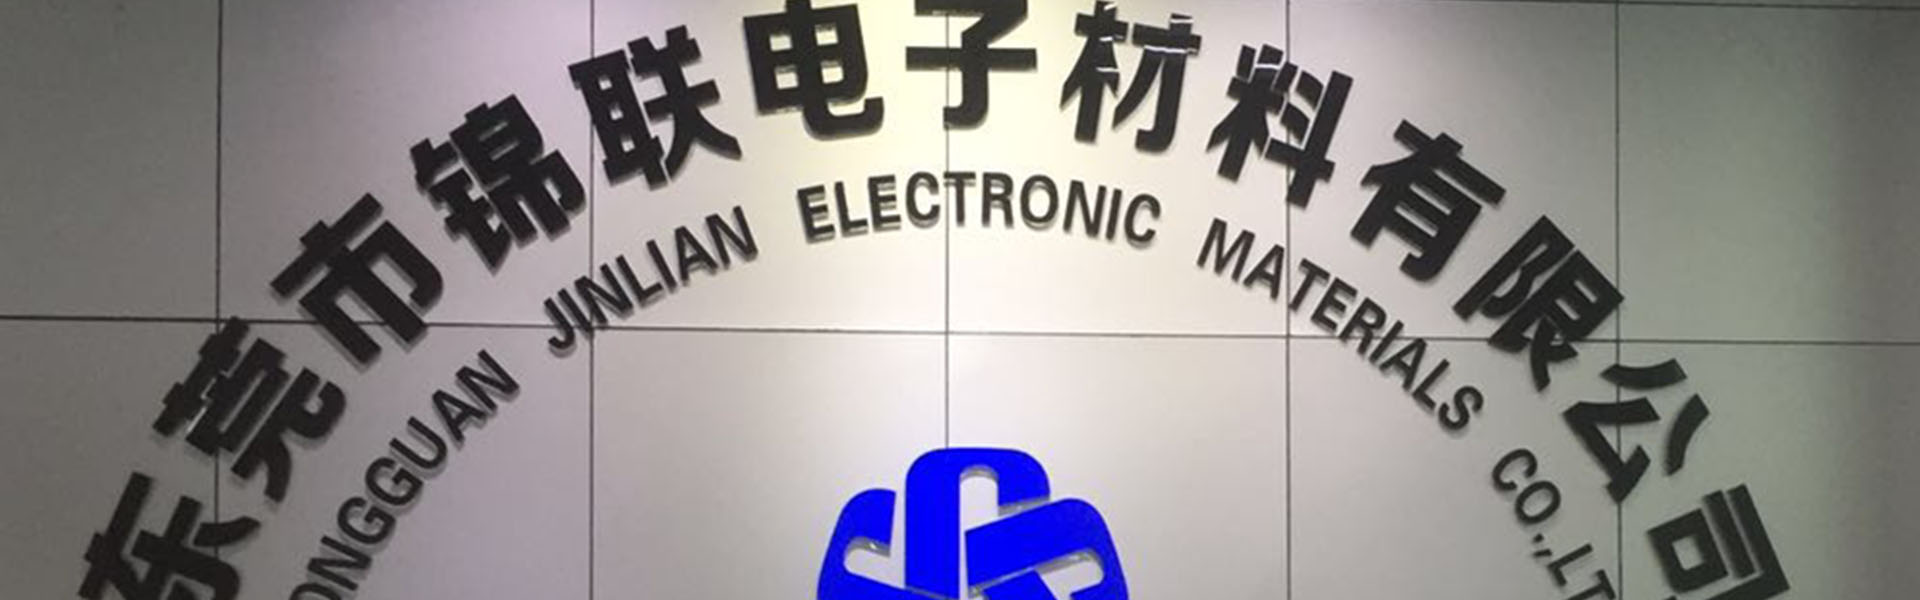 Blisterboks, bakke, transportbånd,Dongguan Jinlian Electronic Materials Co., Ltd